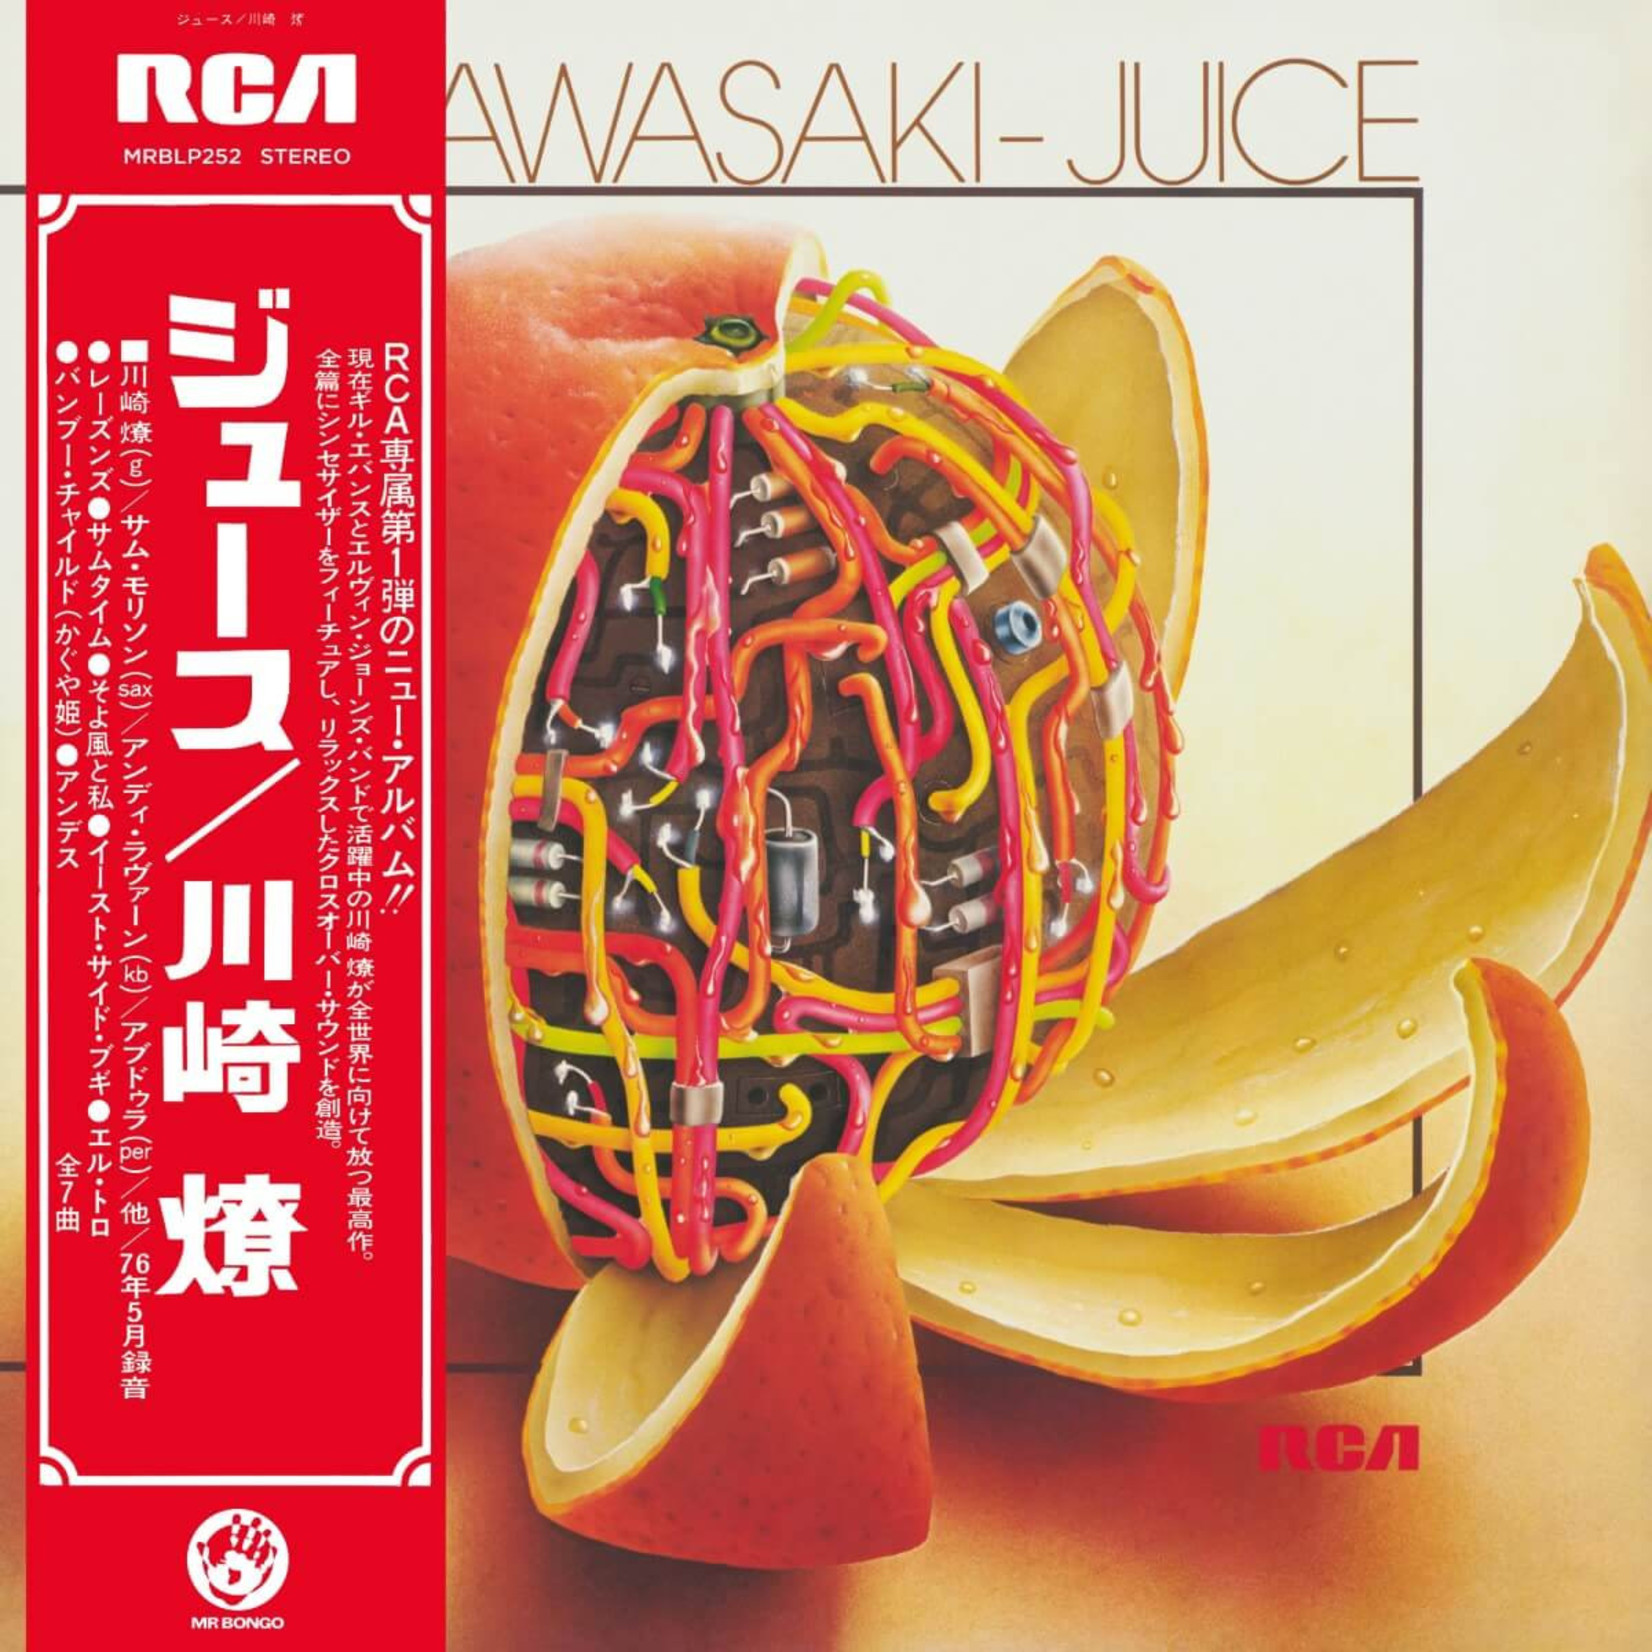 [New] Ryo Kawasaki - Juice